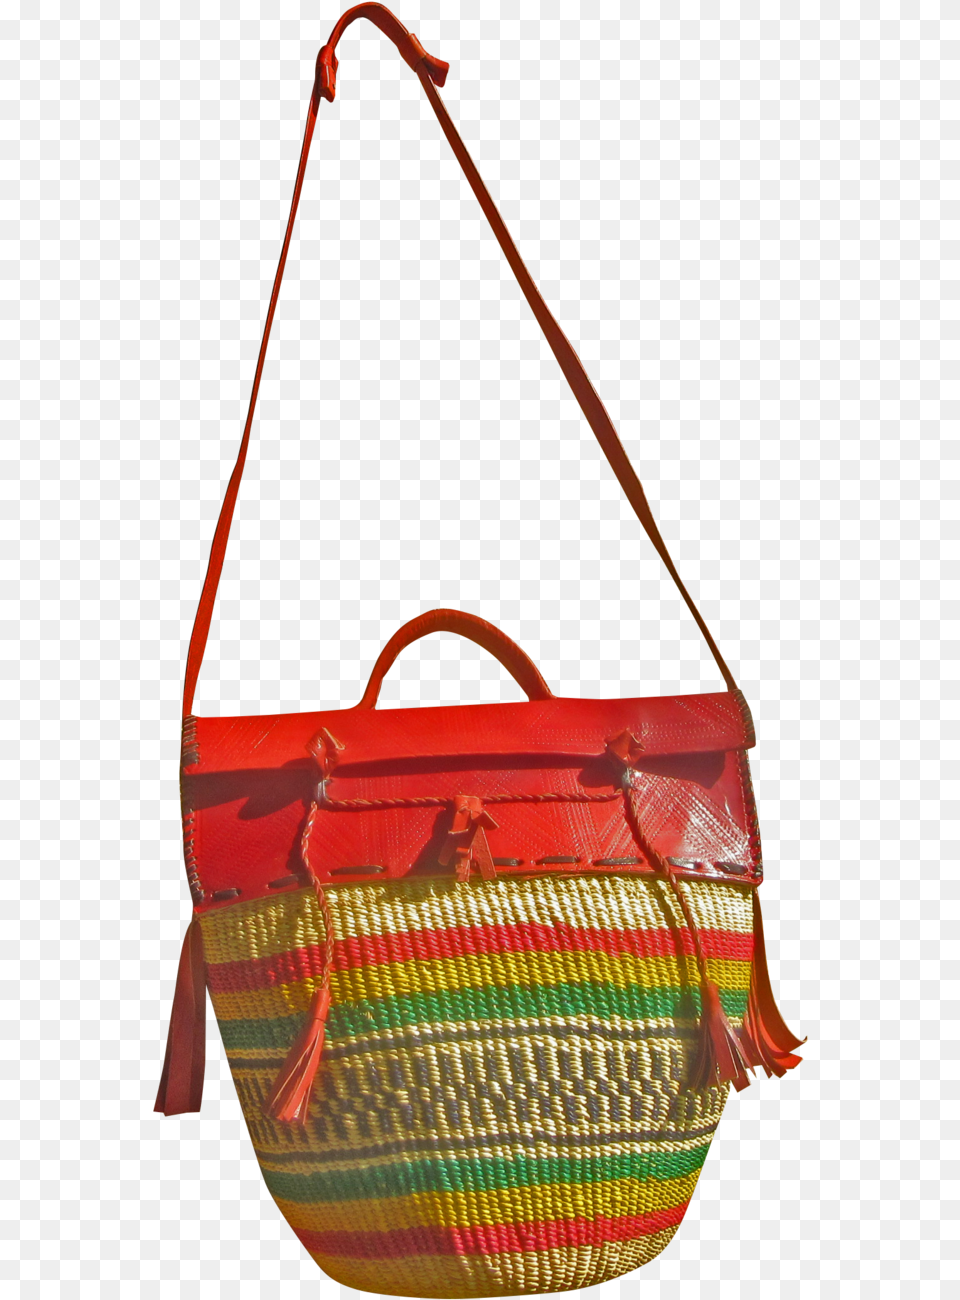 Shoulder Bag, Accessories, Handbag, Purse, Woven Free Transparent Png